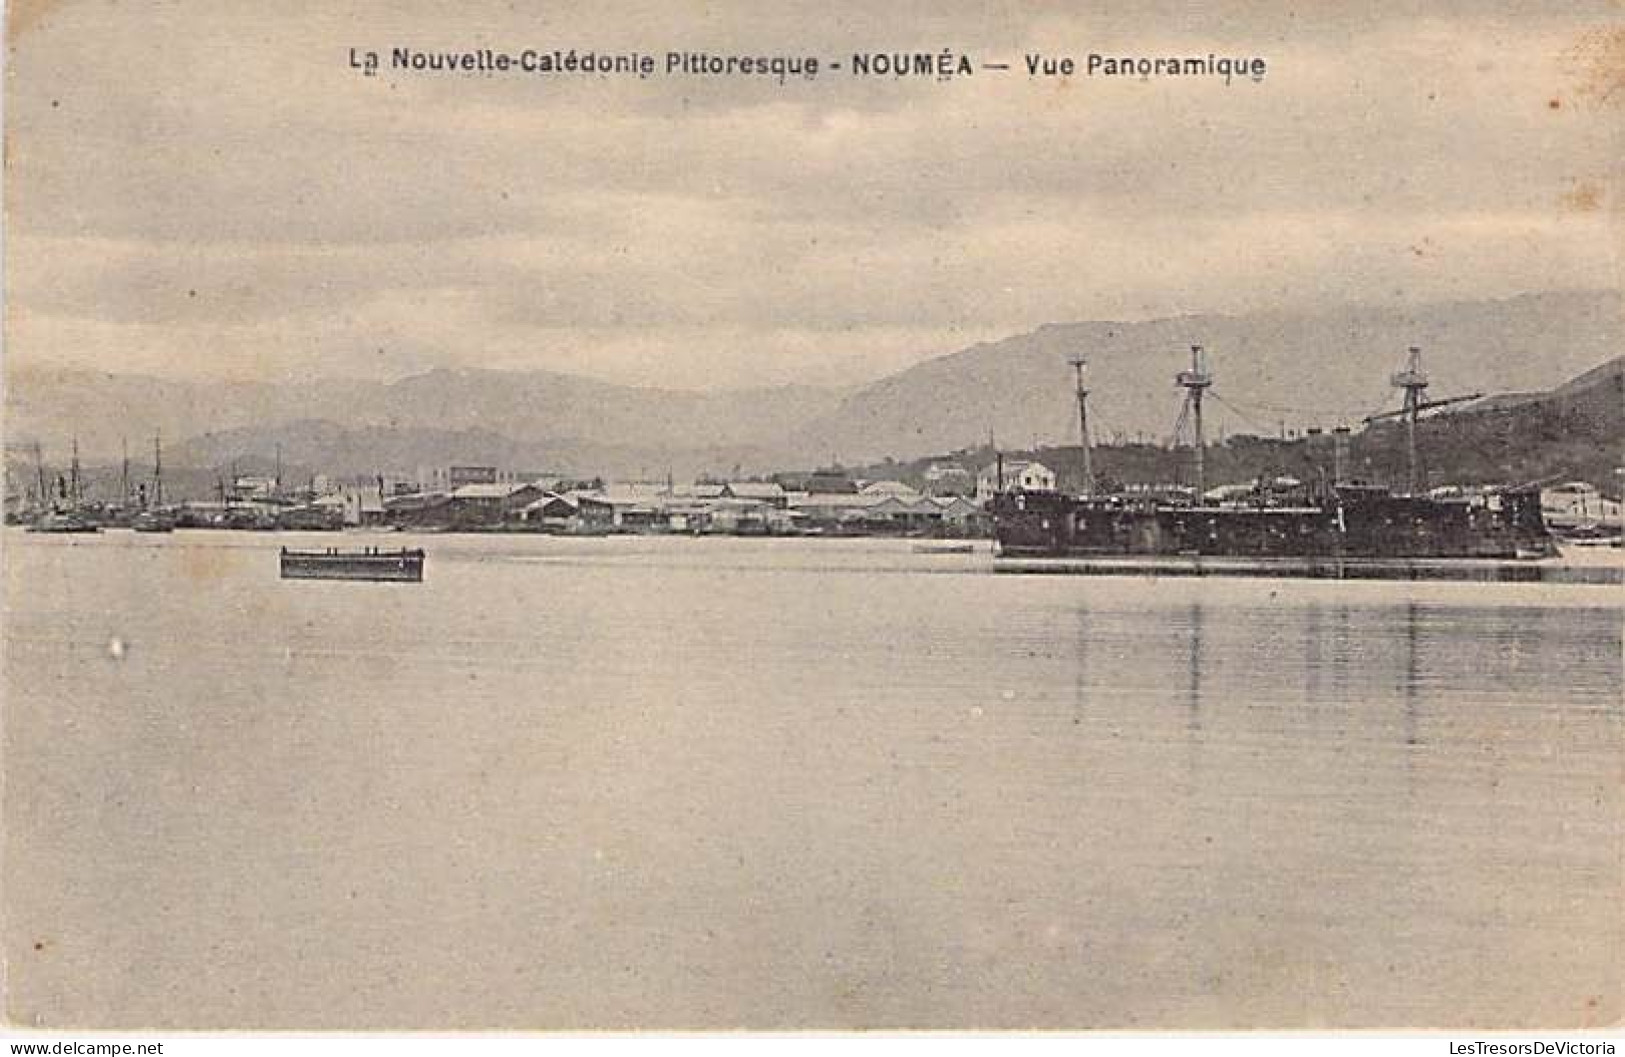 Nouvelle Calédonie Pittoresque - Nouméa - Vue Panoramique - Bateau - Béchade - Carte Postale Ancienne - New Caledonia